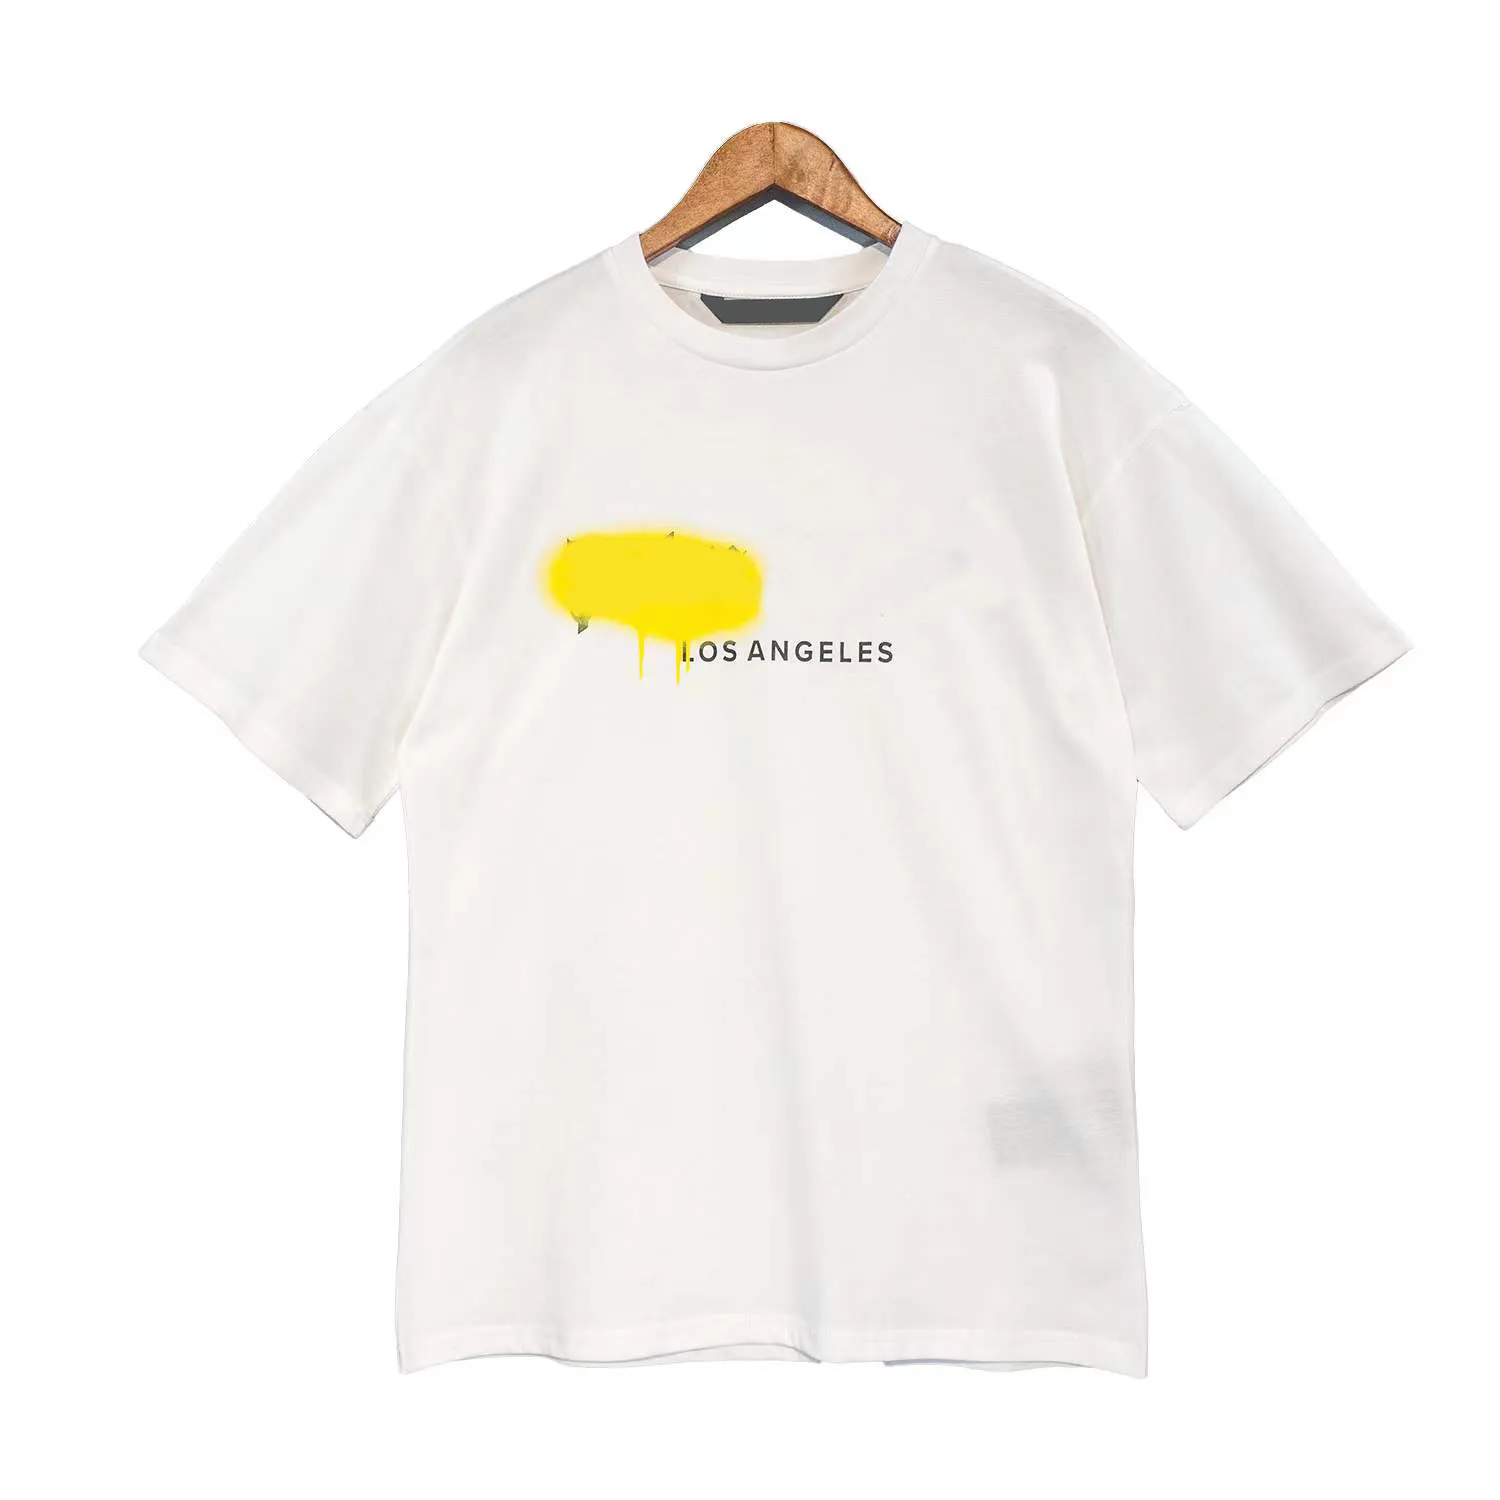 T-shirt T-shirt di design Camicie Palms per giovani uomini Boy Girl T-shirt stampate Orso Oversize T-shirt angeli casuali traspiranti 100% puro cotone Taglia S M L XL